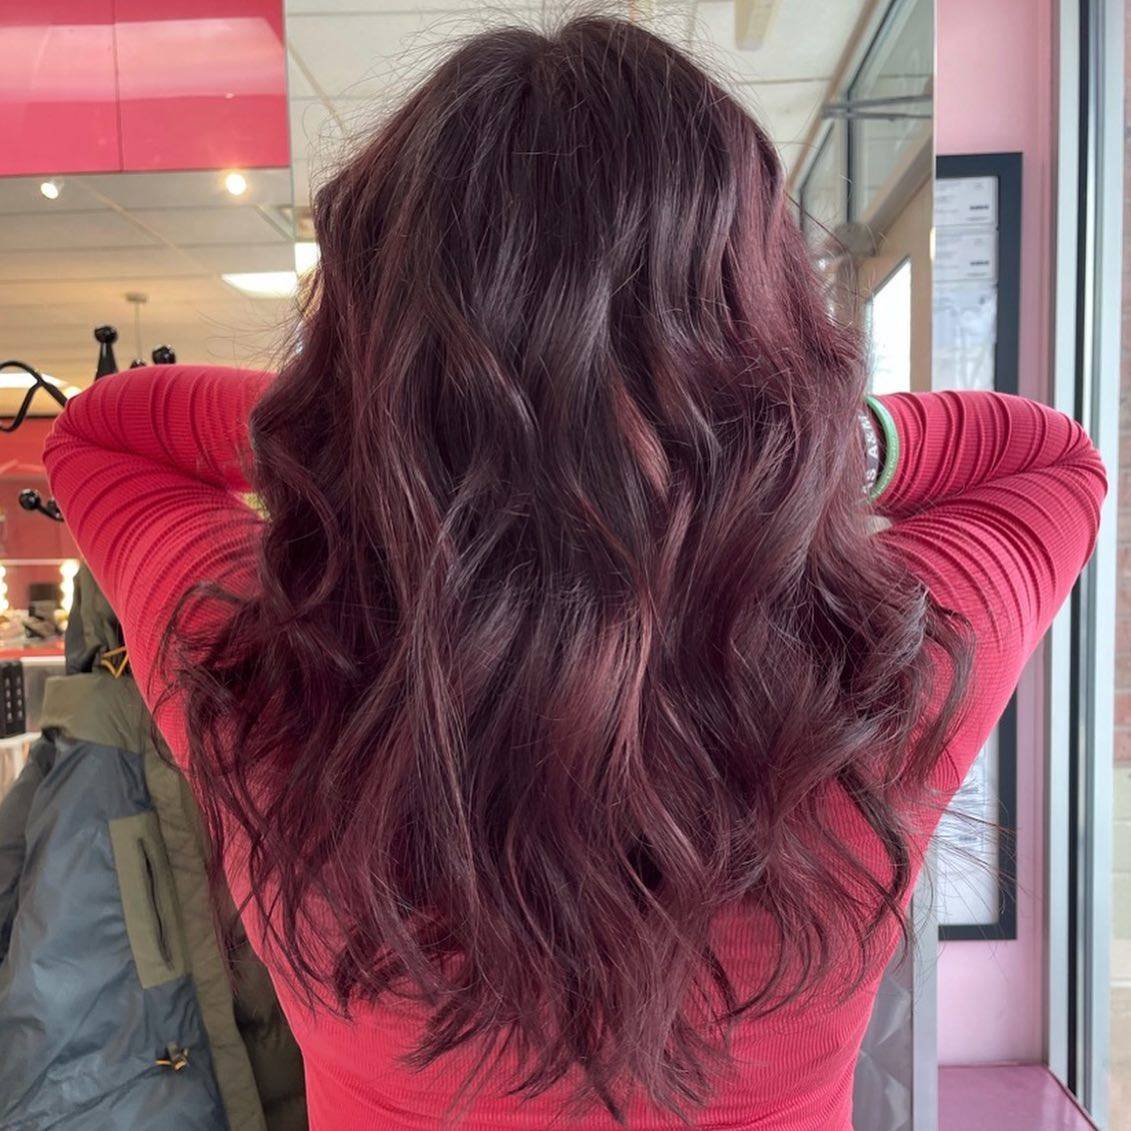 Burgundy hair color 322 burgundy hair color | burgundy hair color for women | burgundy hair color highlights Burgundy Hair Color